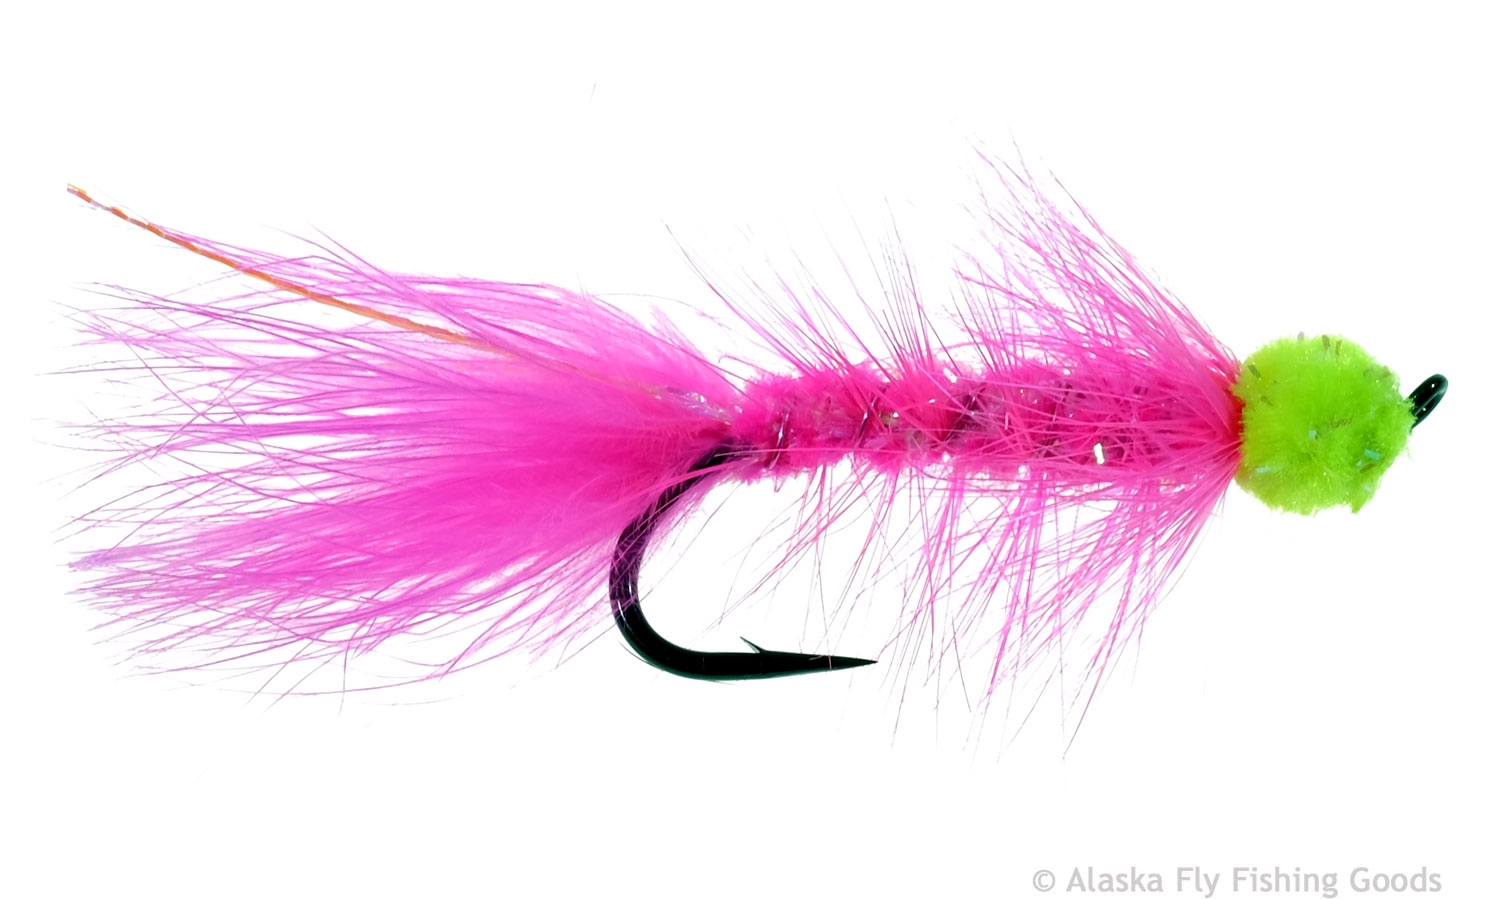 https://www.alaskaflyfishinggoods.com/wp-content/uploads/product_images/esl_pink.jpg